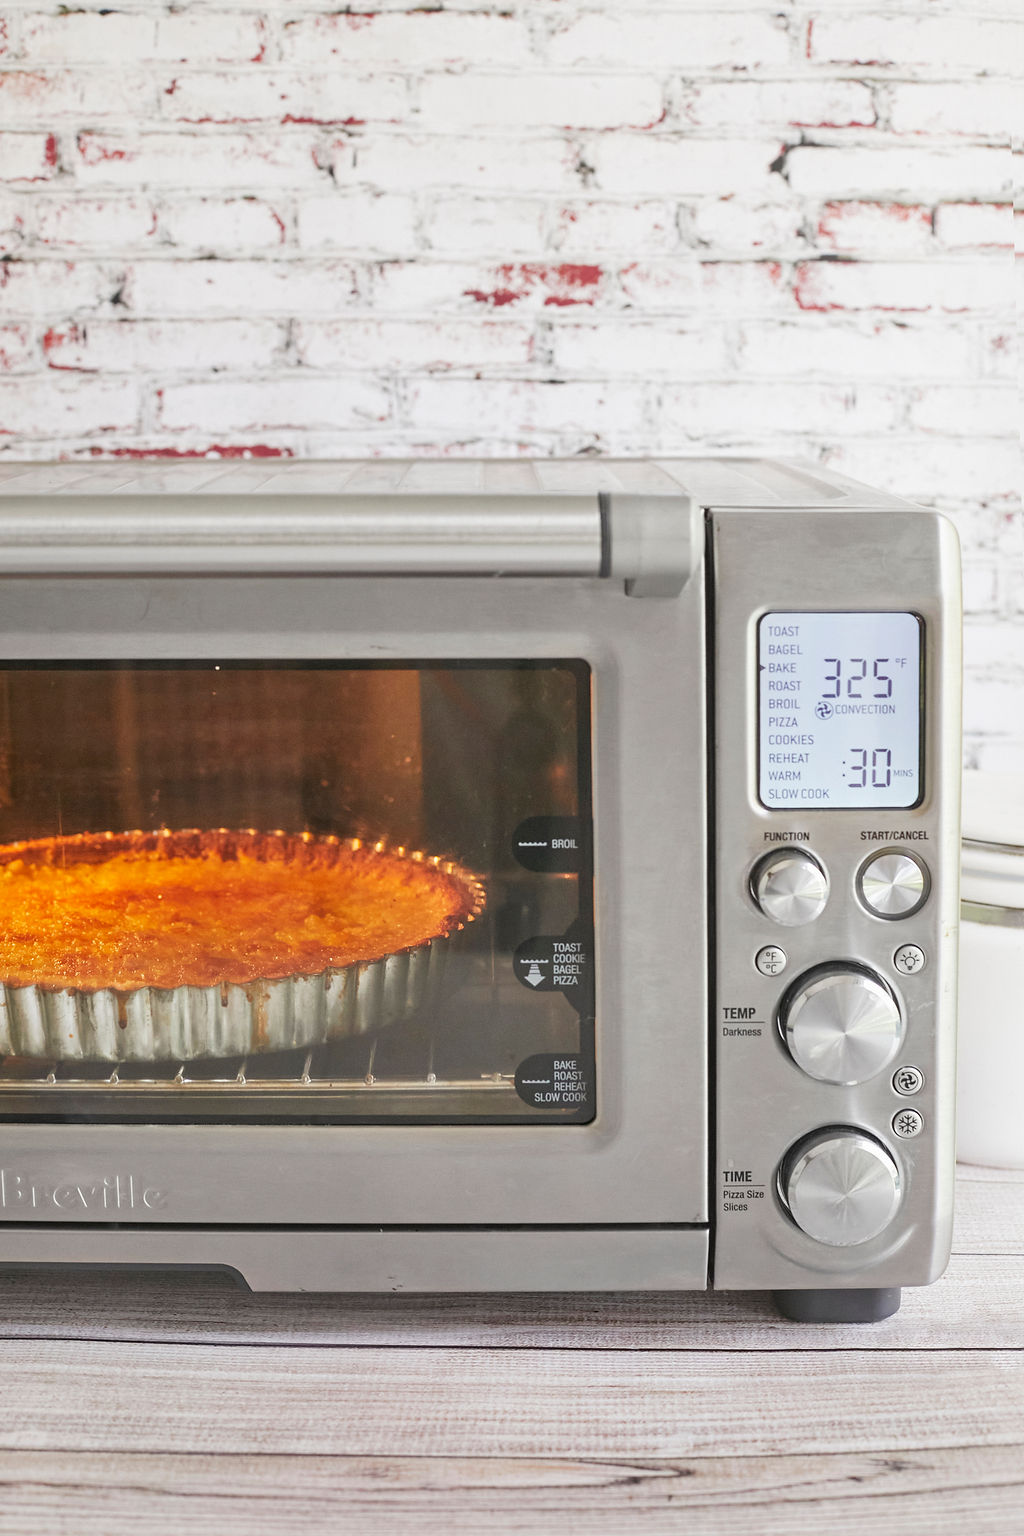 Mini Oven For Baking Cakes - Best Buy